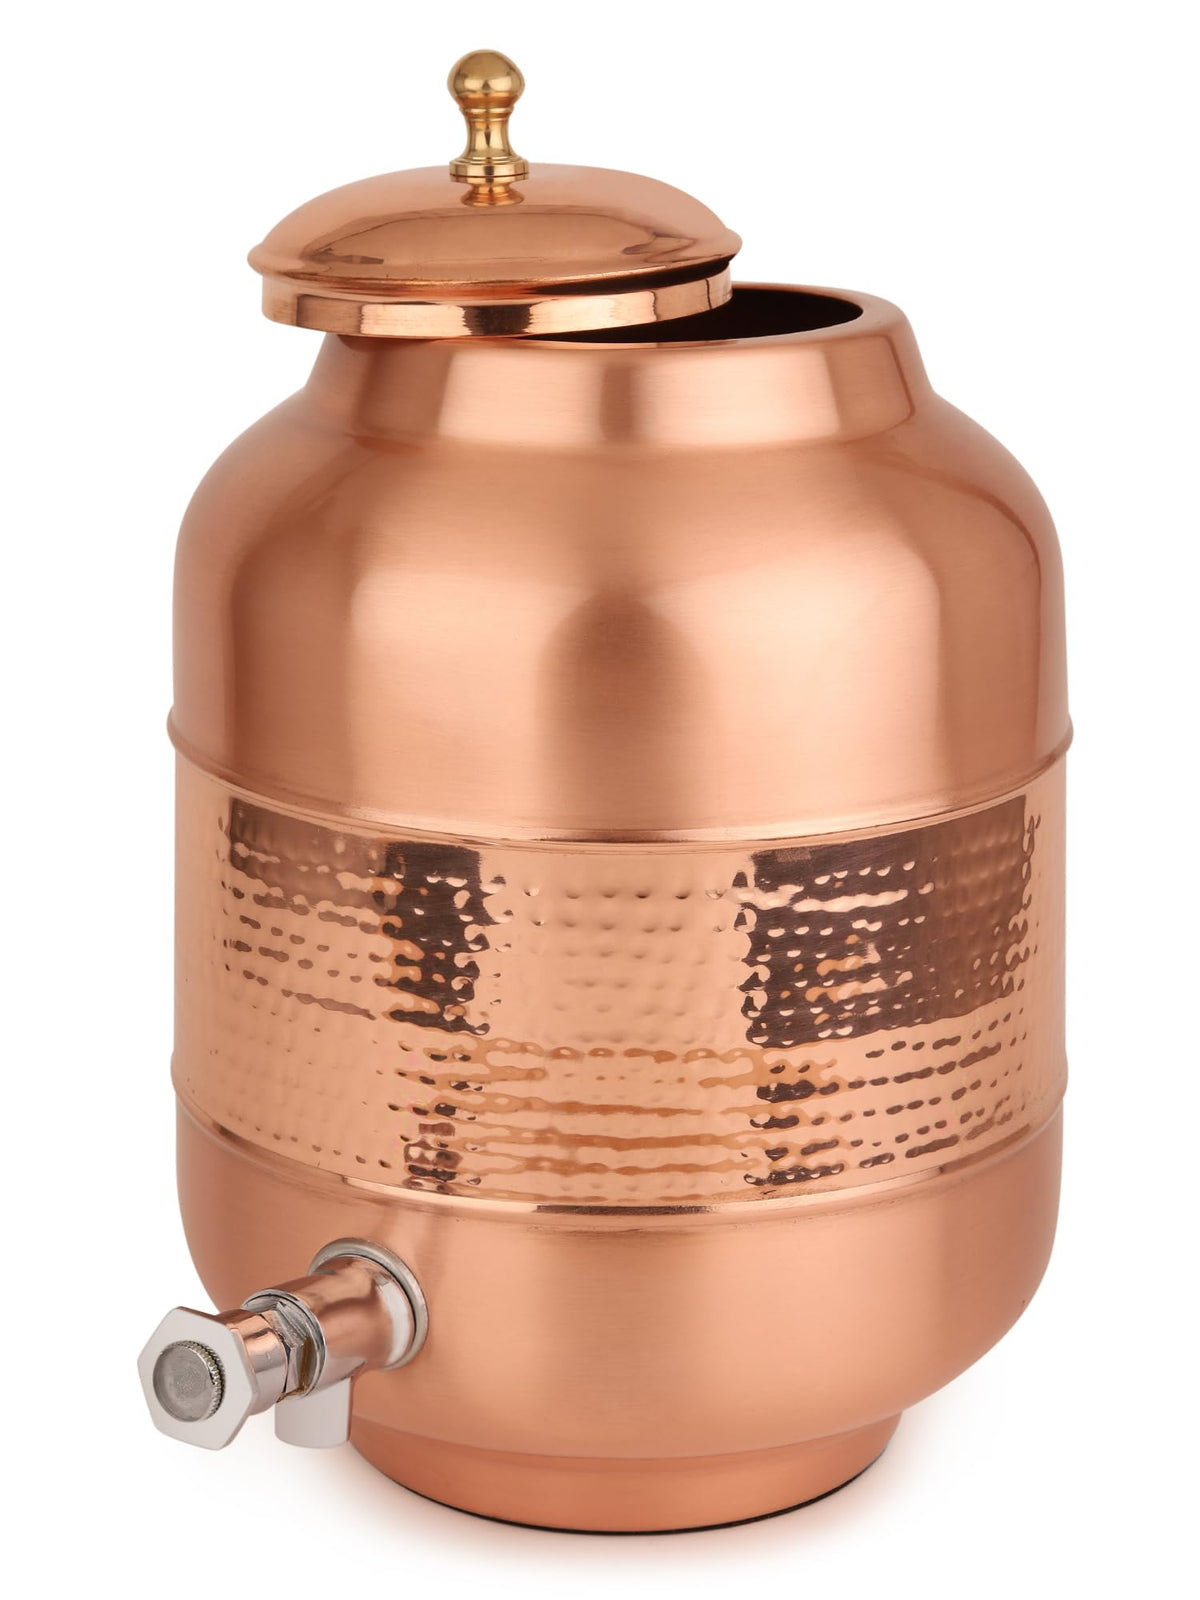 USHA SHRIRAM Pure Copper Water Bottle (1 L) & Copper Matka (8L) – GB Usha